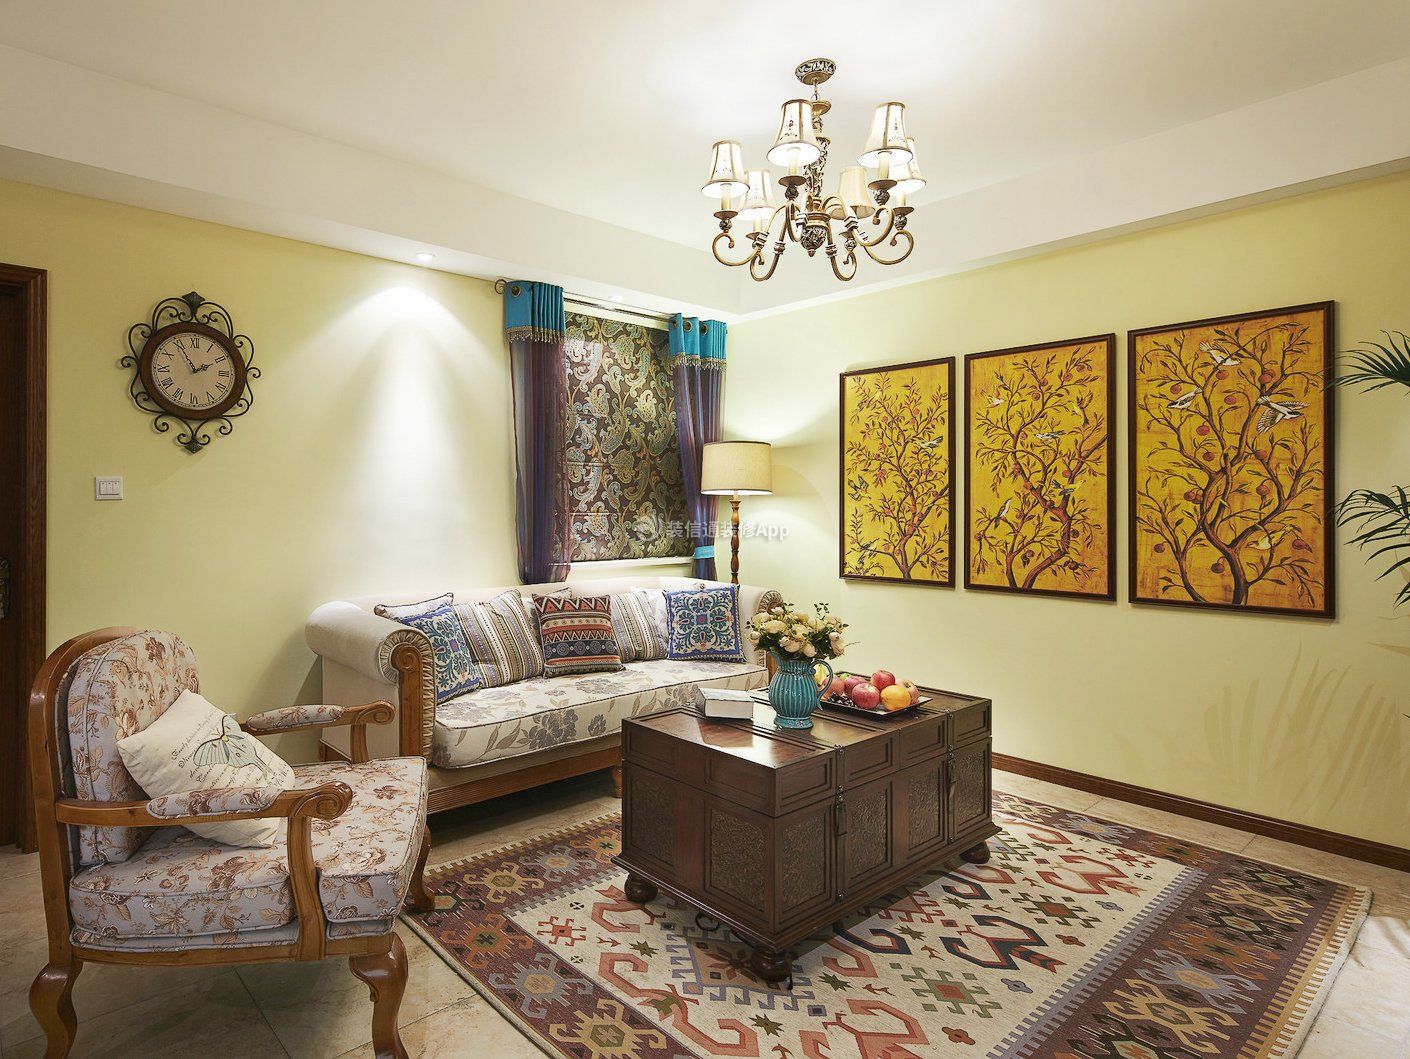 东南亚风格家庭客厅装修设计效果图